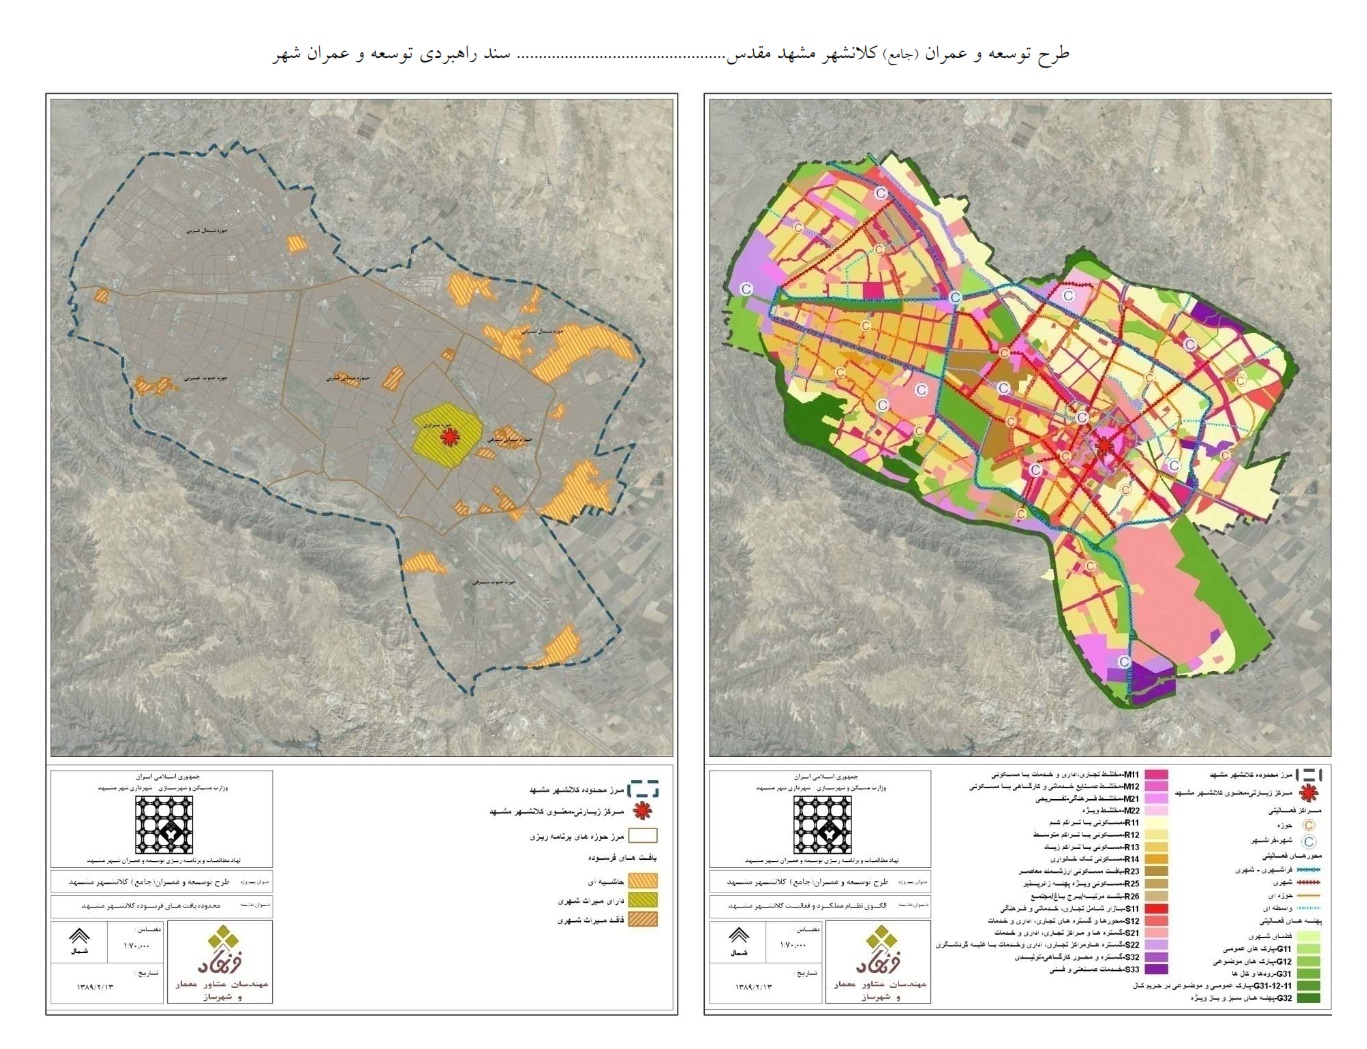 دانلود رایگان جدیدترین فایل نقشه اتوکد شهر مشهد با فرمت DWG طرح تفضیلی 